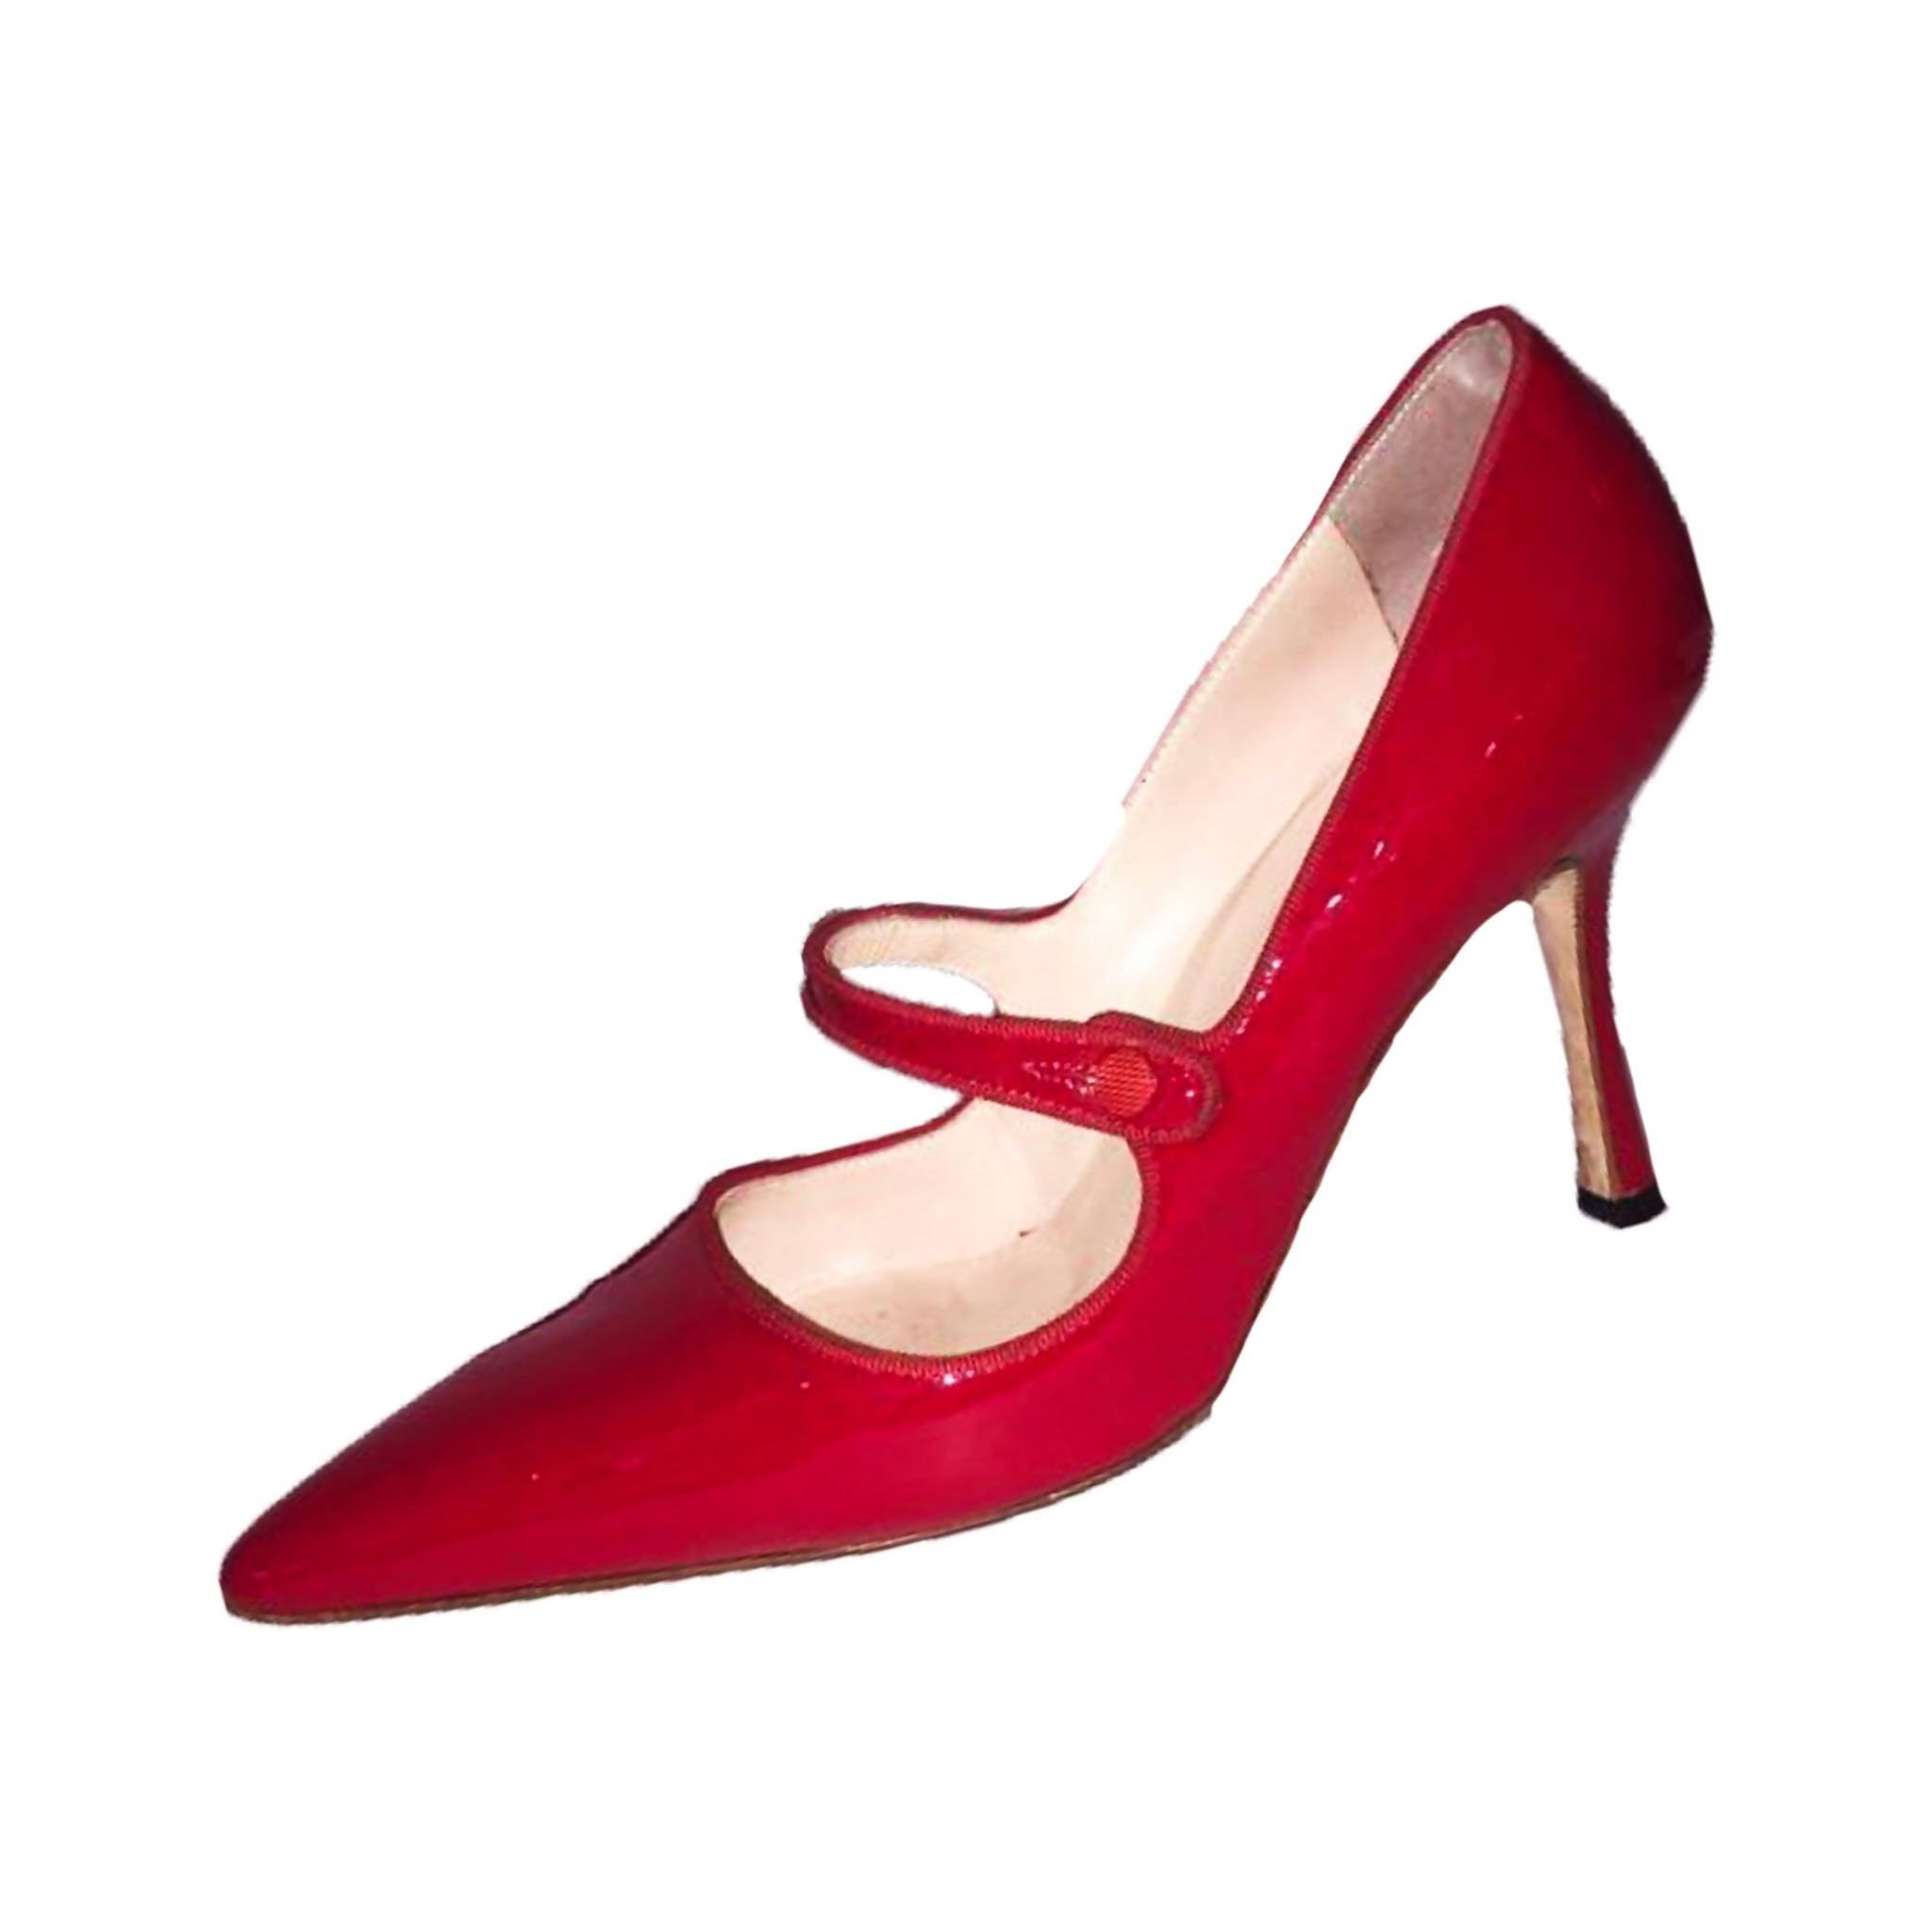 Red bottom high heels  Louis vuitton high heels, Louis vuitton shoes heels,  Manolo blahnik heels